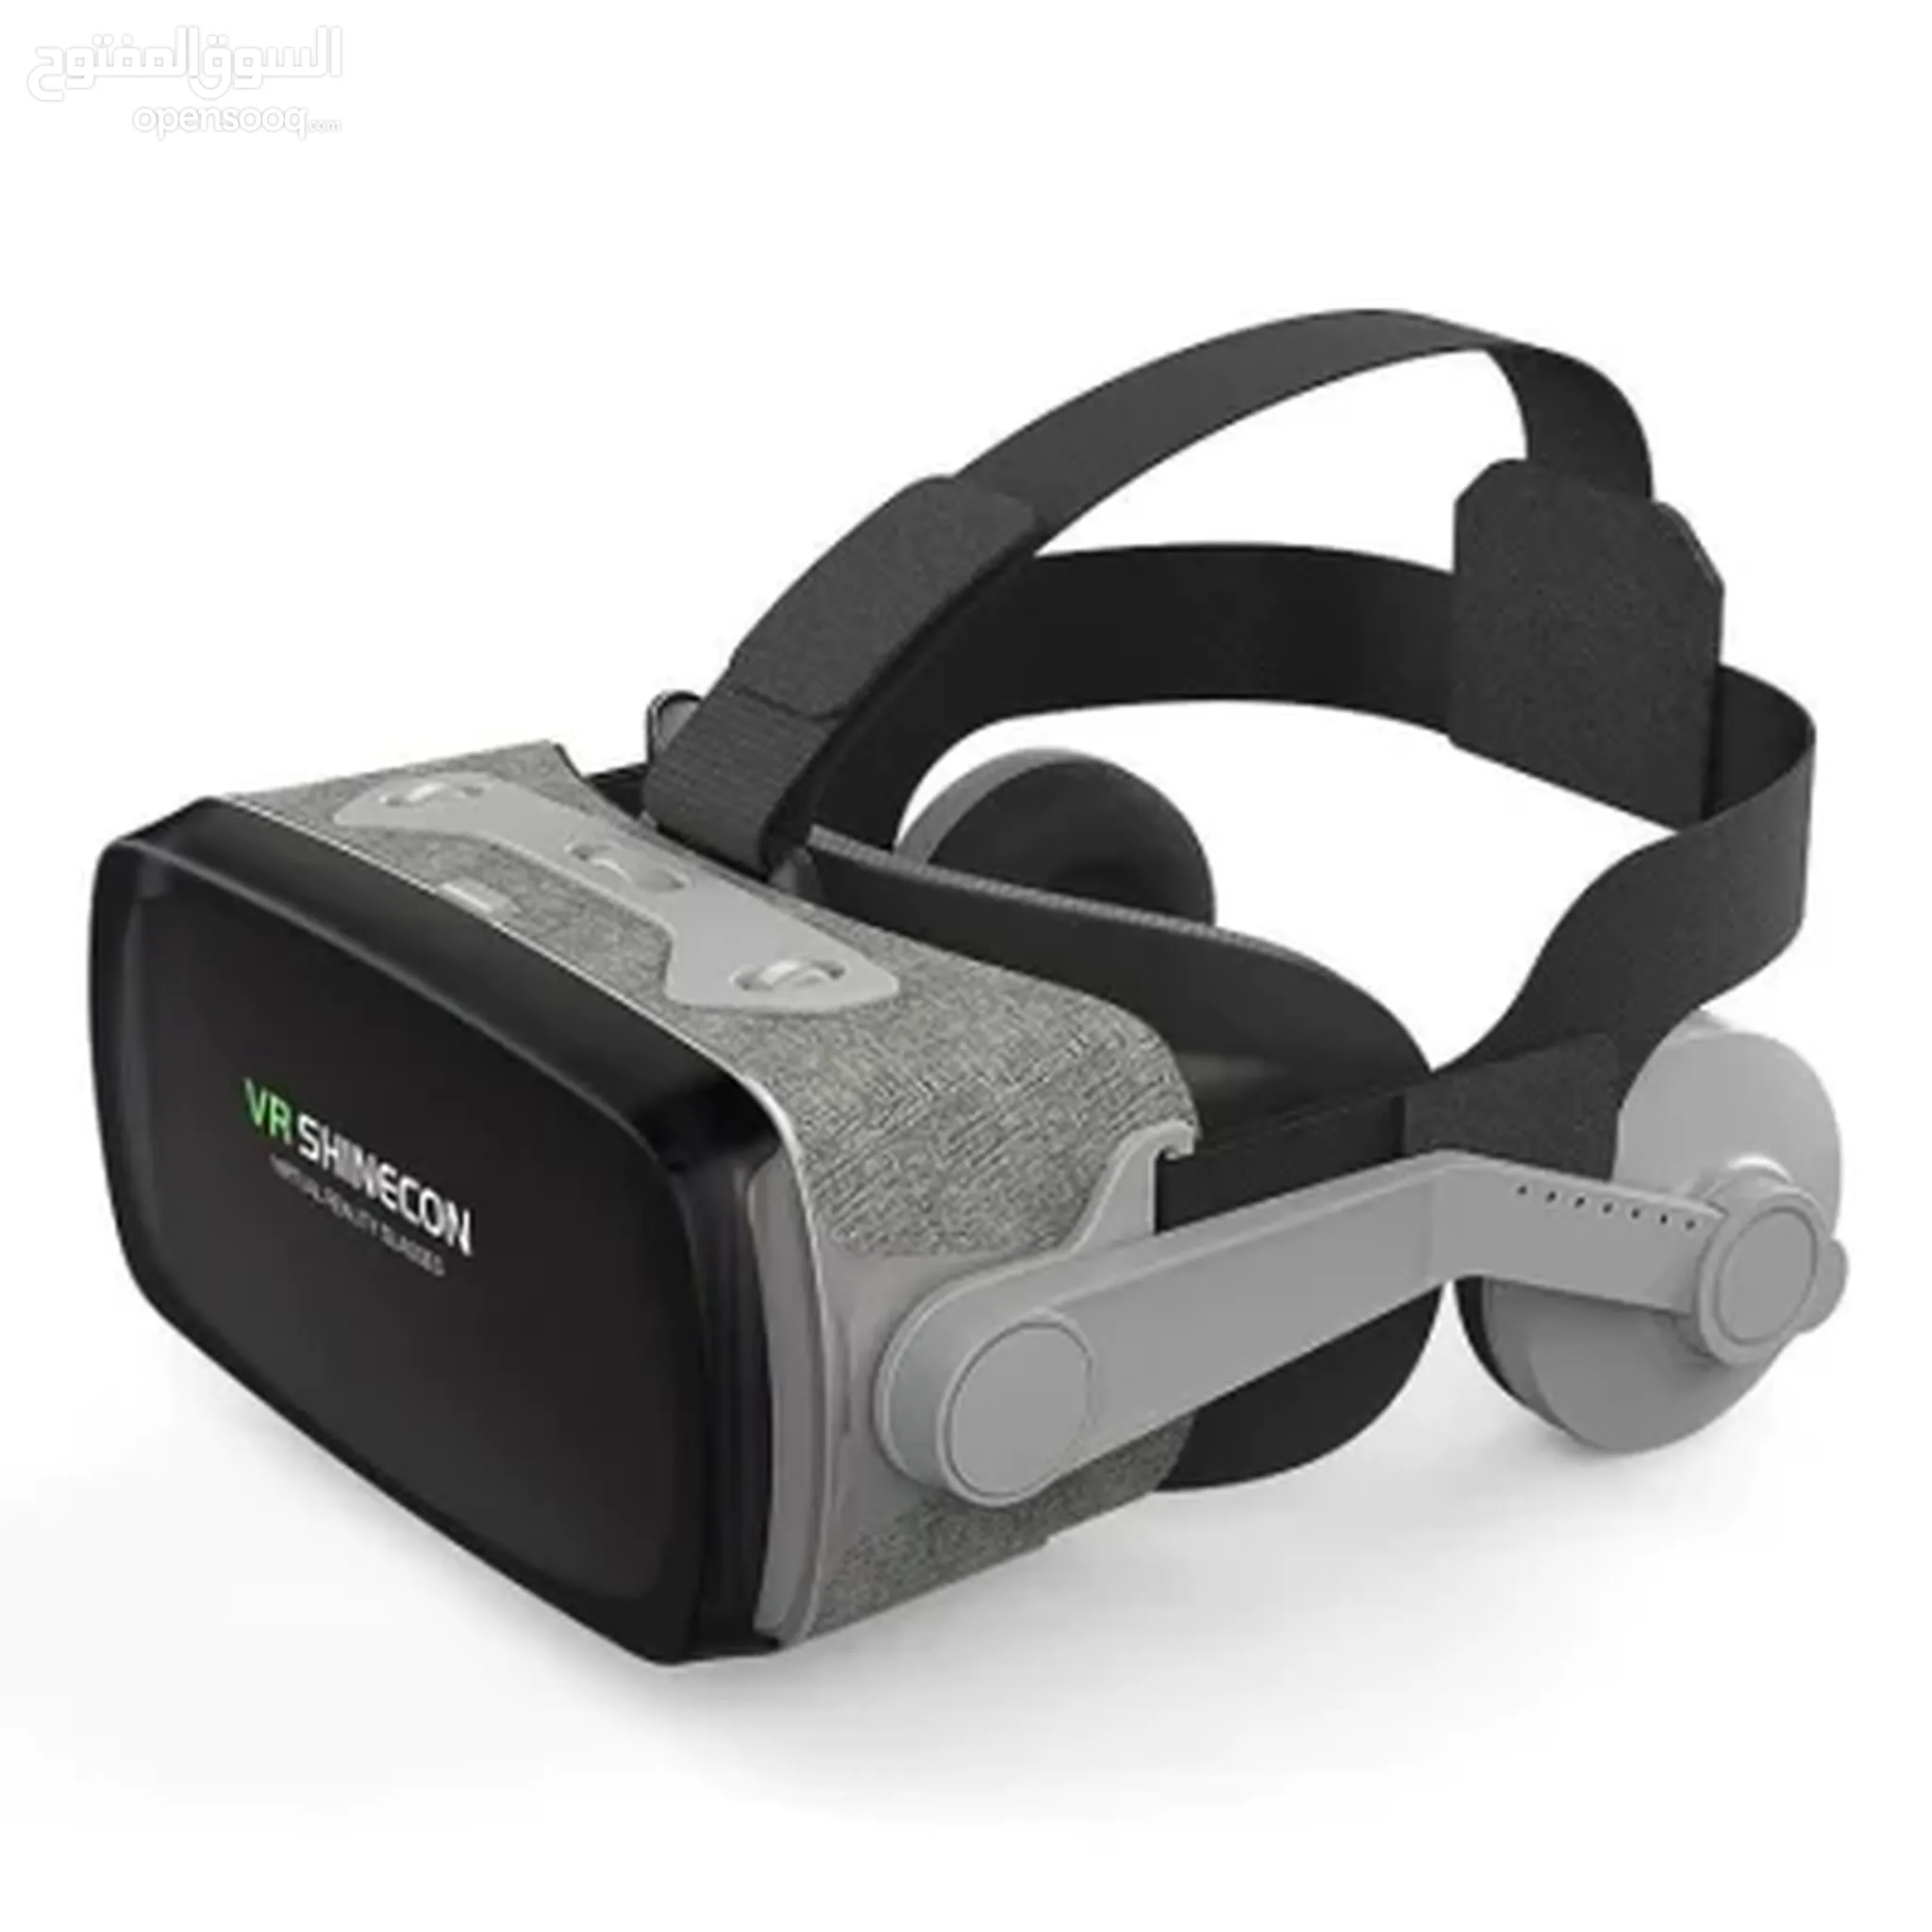 VR للبيع في عُمان : افضل الاسعار | السوق المفتوح